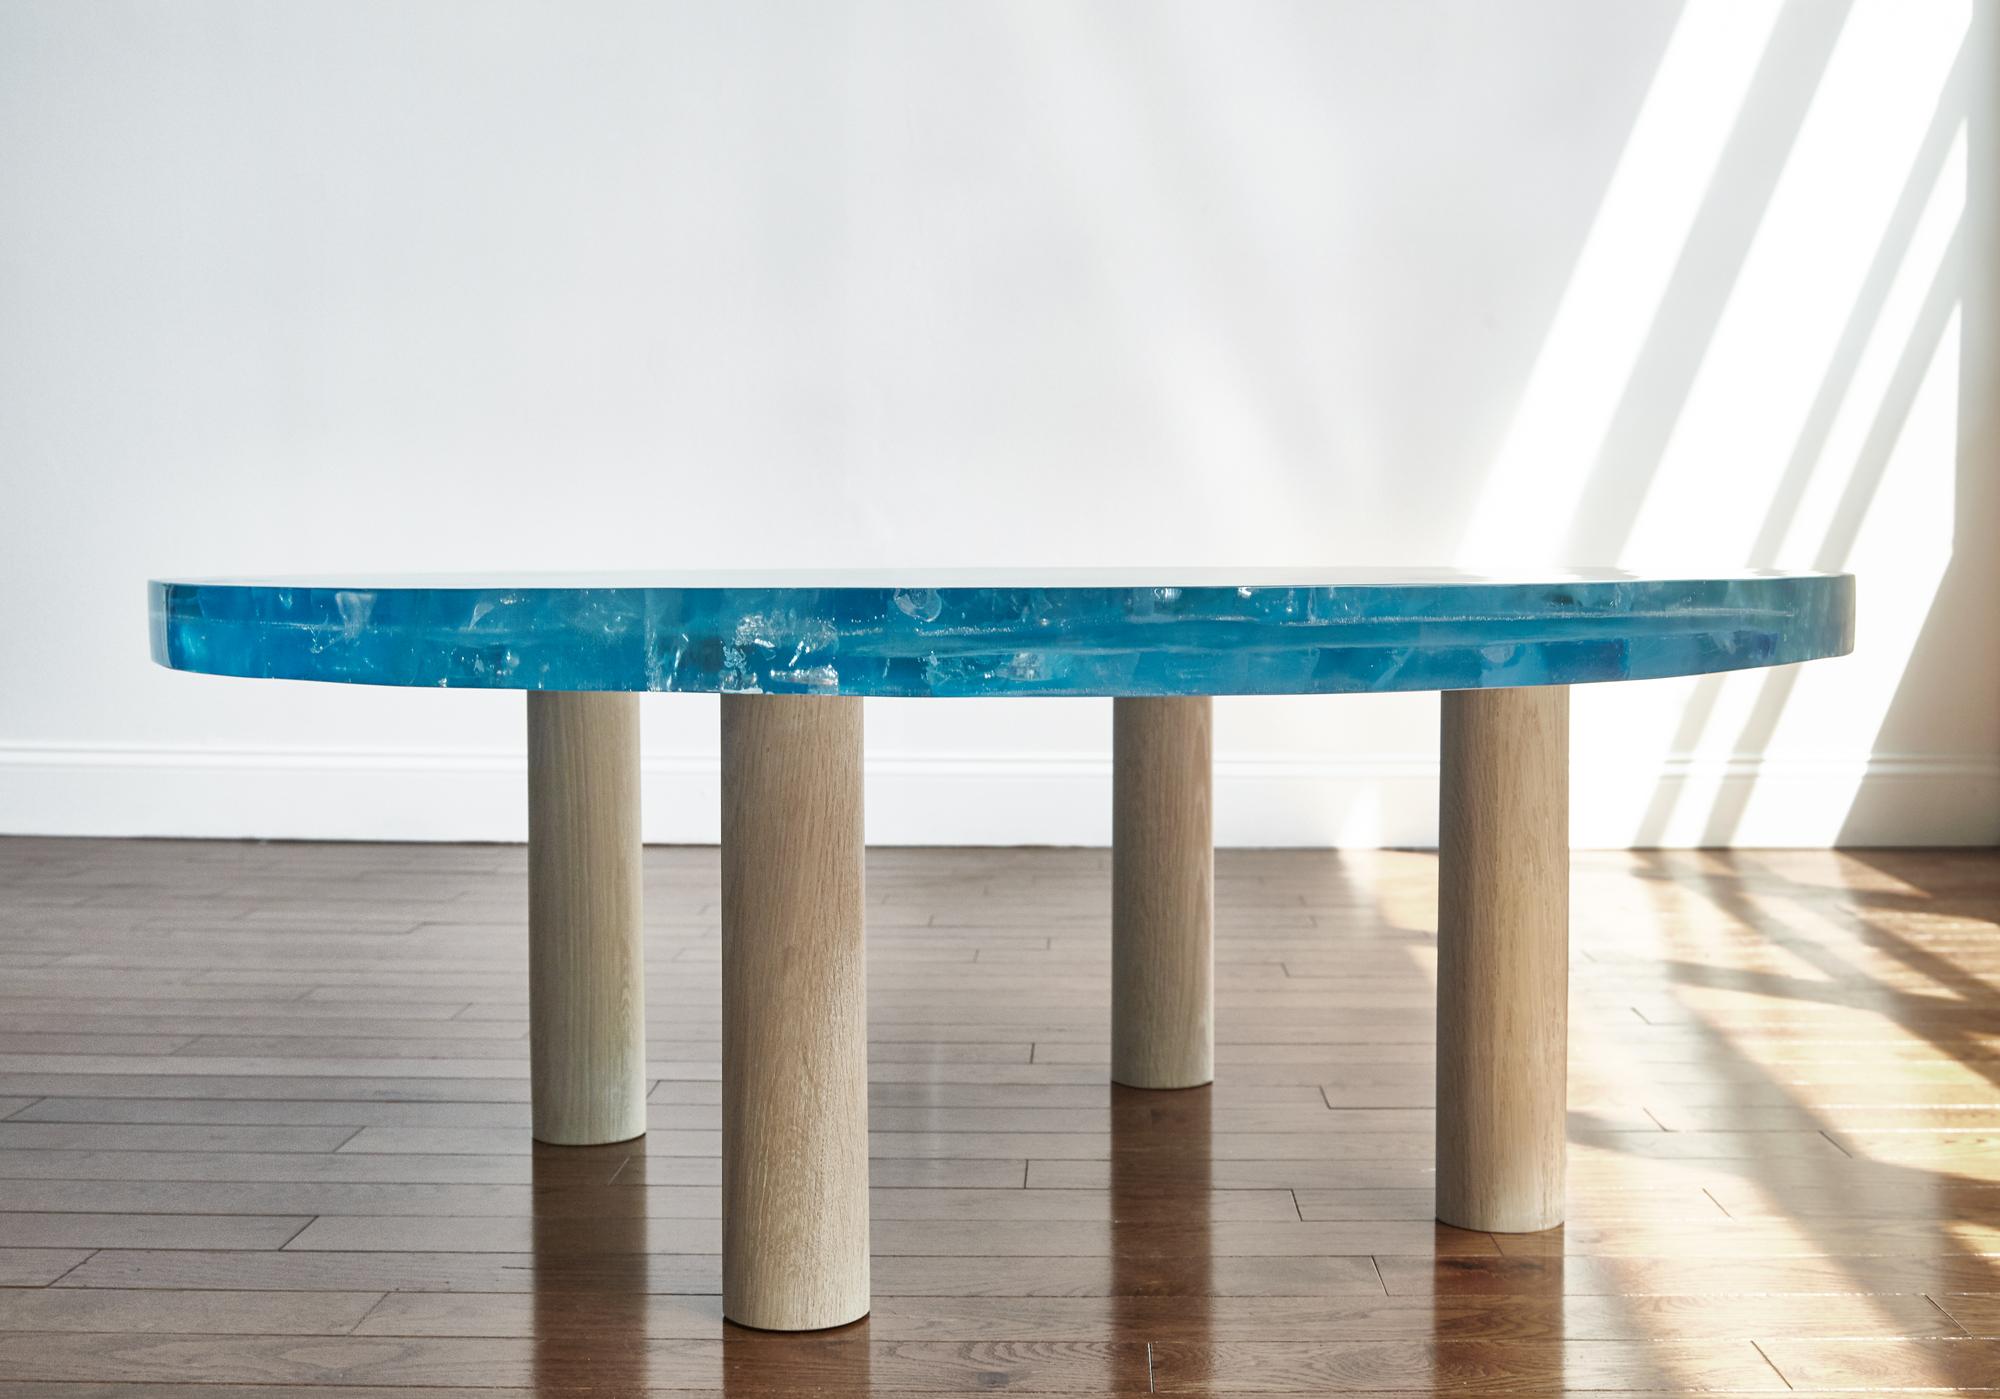 Handgefertigter Harztisch, jedes Stück ist einzigartig, da der Prozess des Aufbrechens des Harzes immer wieder andere Ergebnisse hervorbringt. Dieser Tisch kann in jeder Größe, Form und Farbe hergestellt werden, die am besten zu Ihrem Projekt passt.